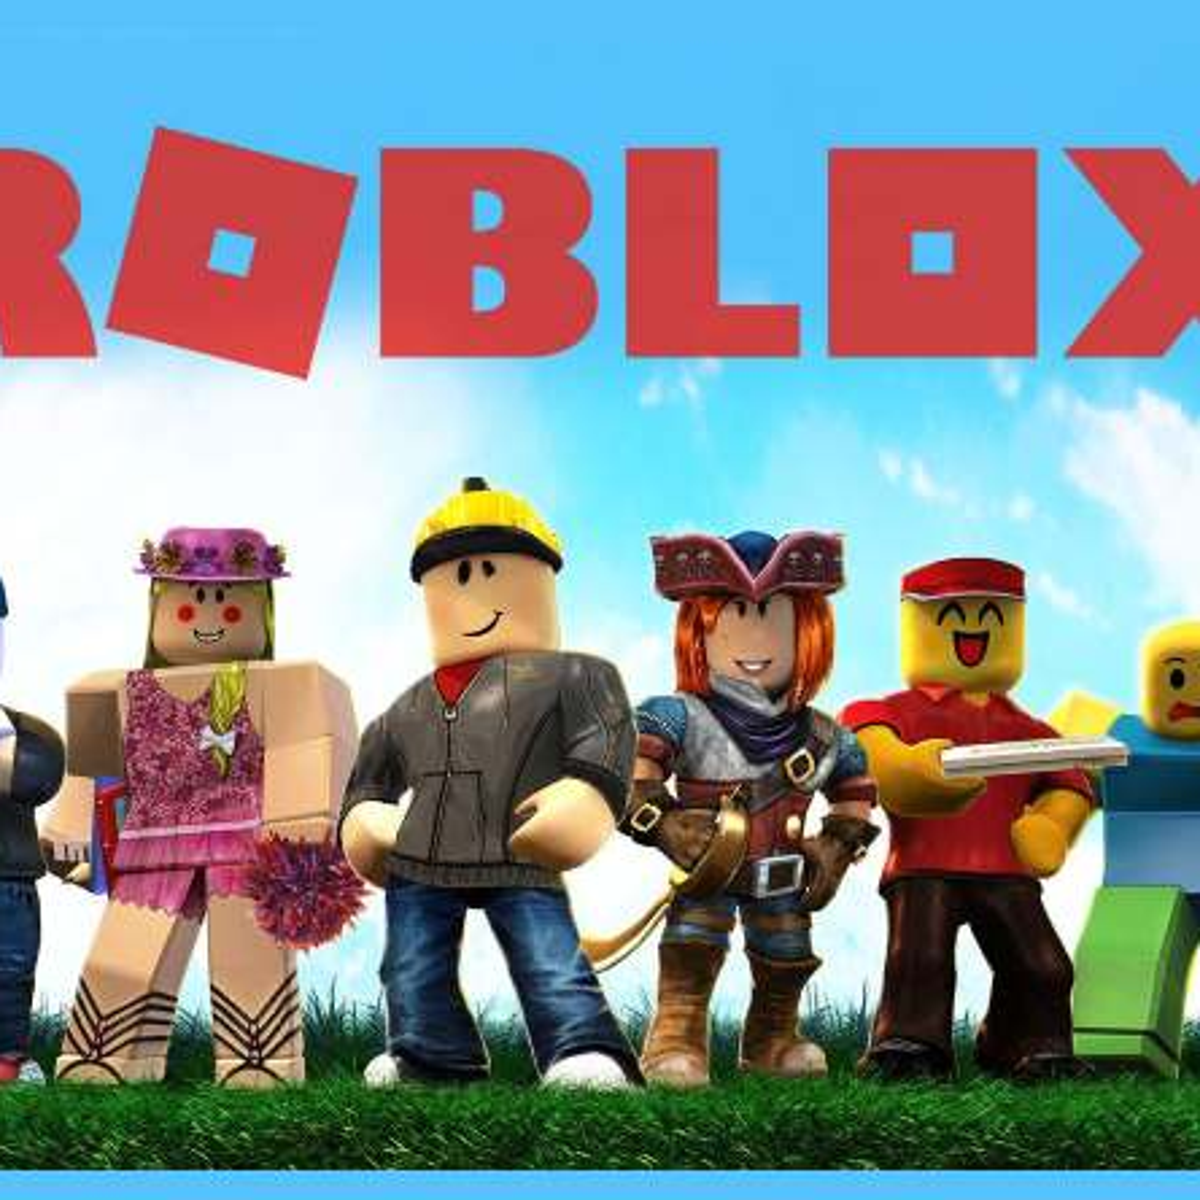 Roblox permite hacks? Veja práticas proibidas na plataformas de games